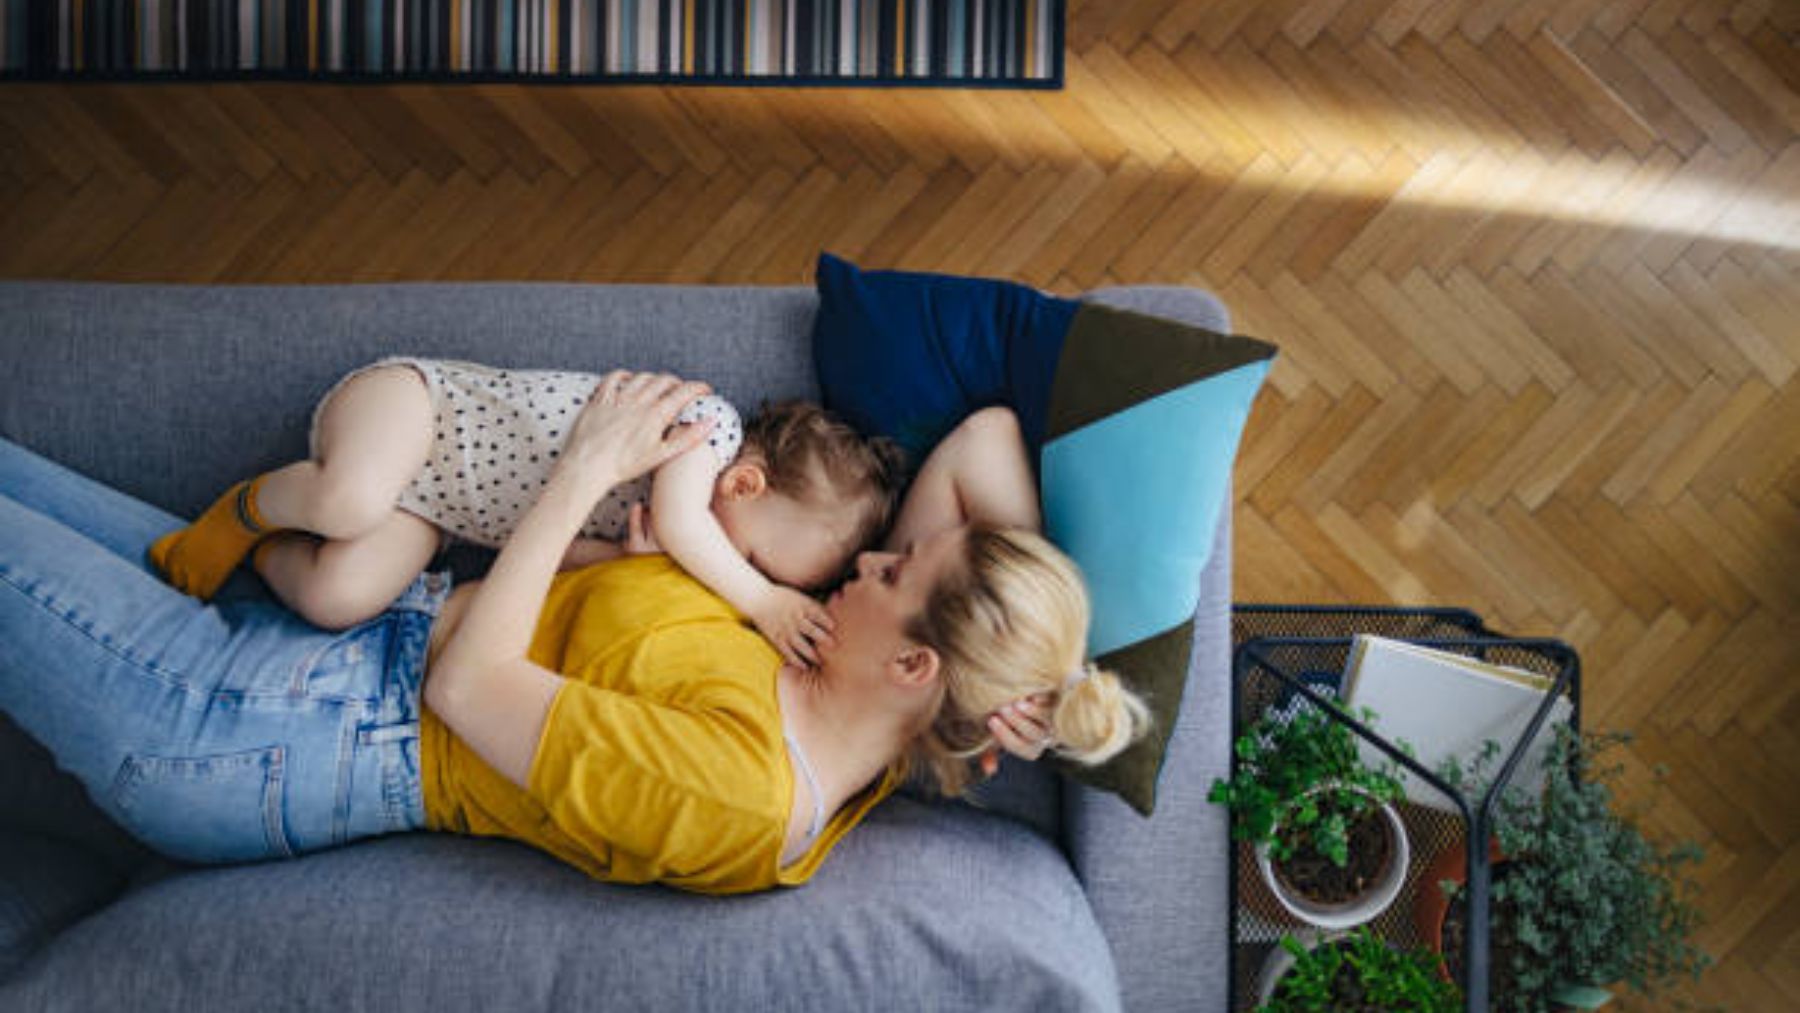 Porqué nunca debes dejar a tu bebé dormido en el sofá